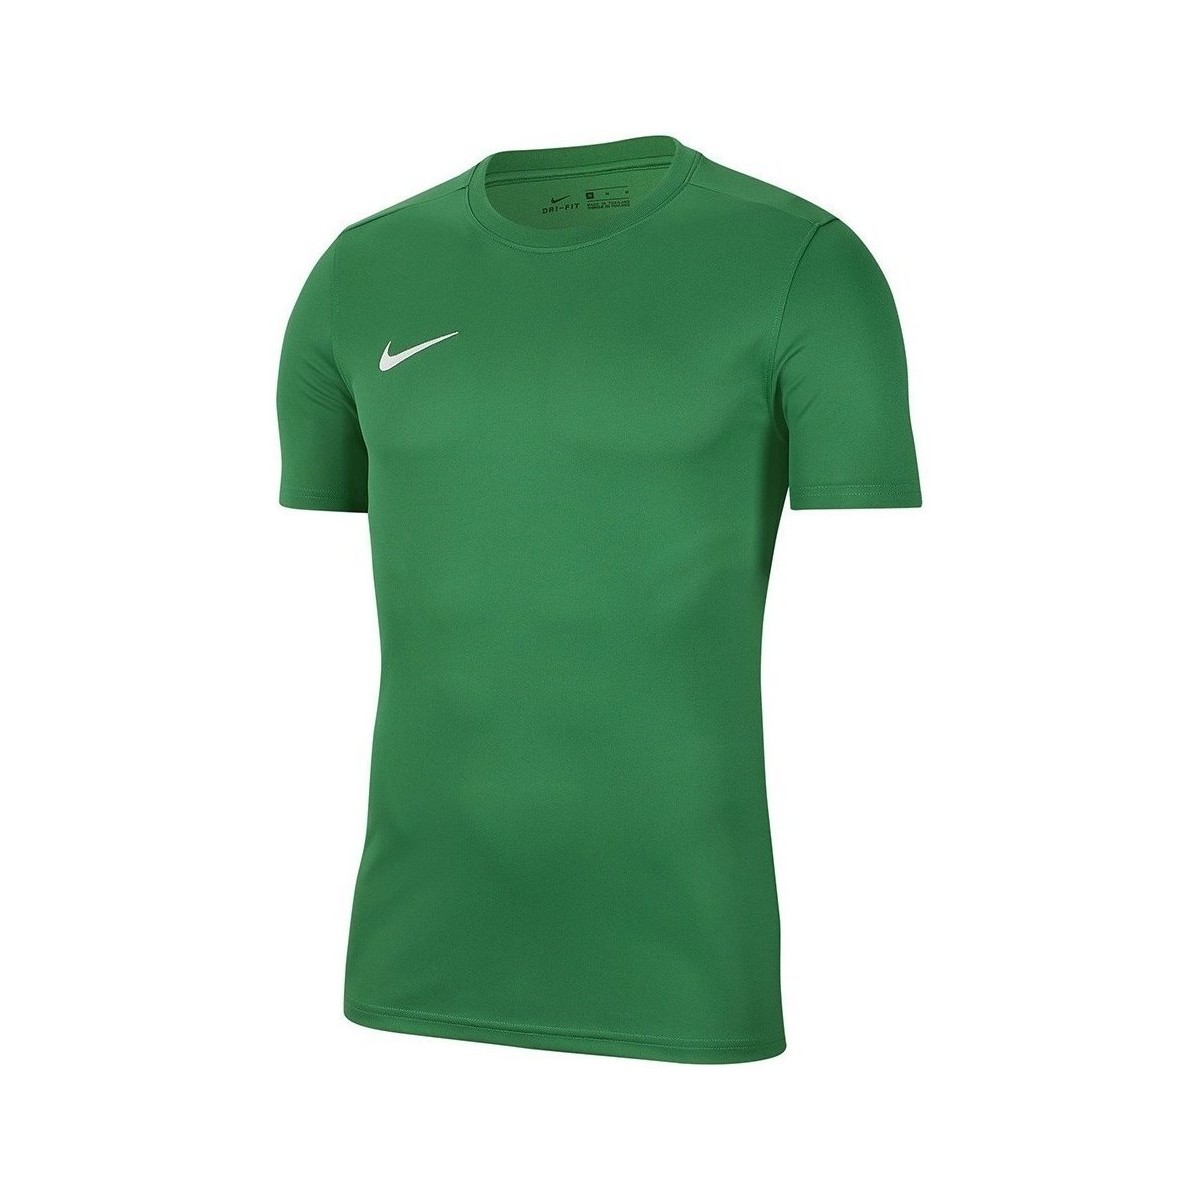 Textil Chlapecké Trička s krátkým rukávem Nike Dry Park Vii Jsy Zelená